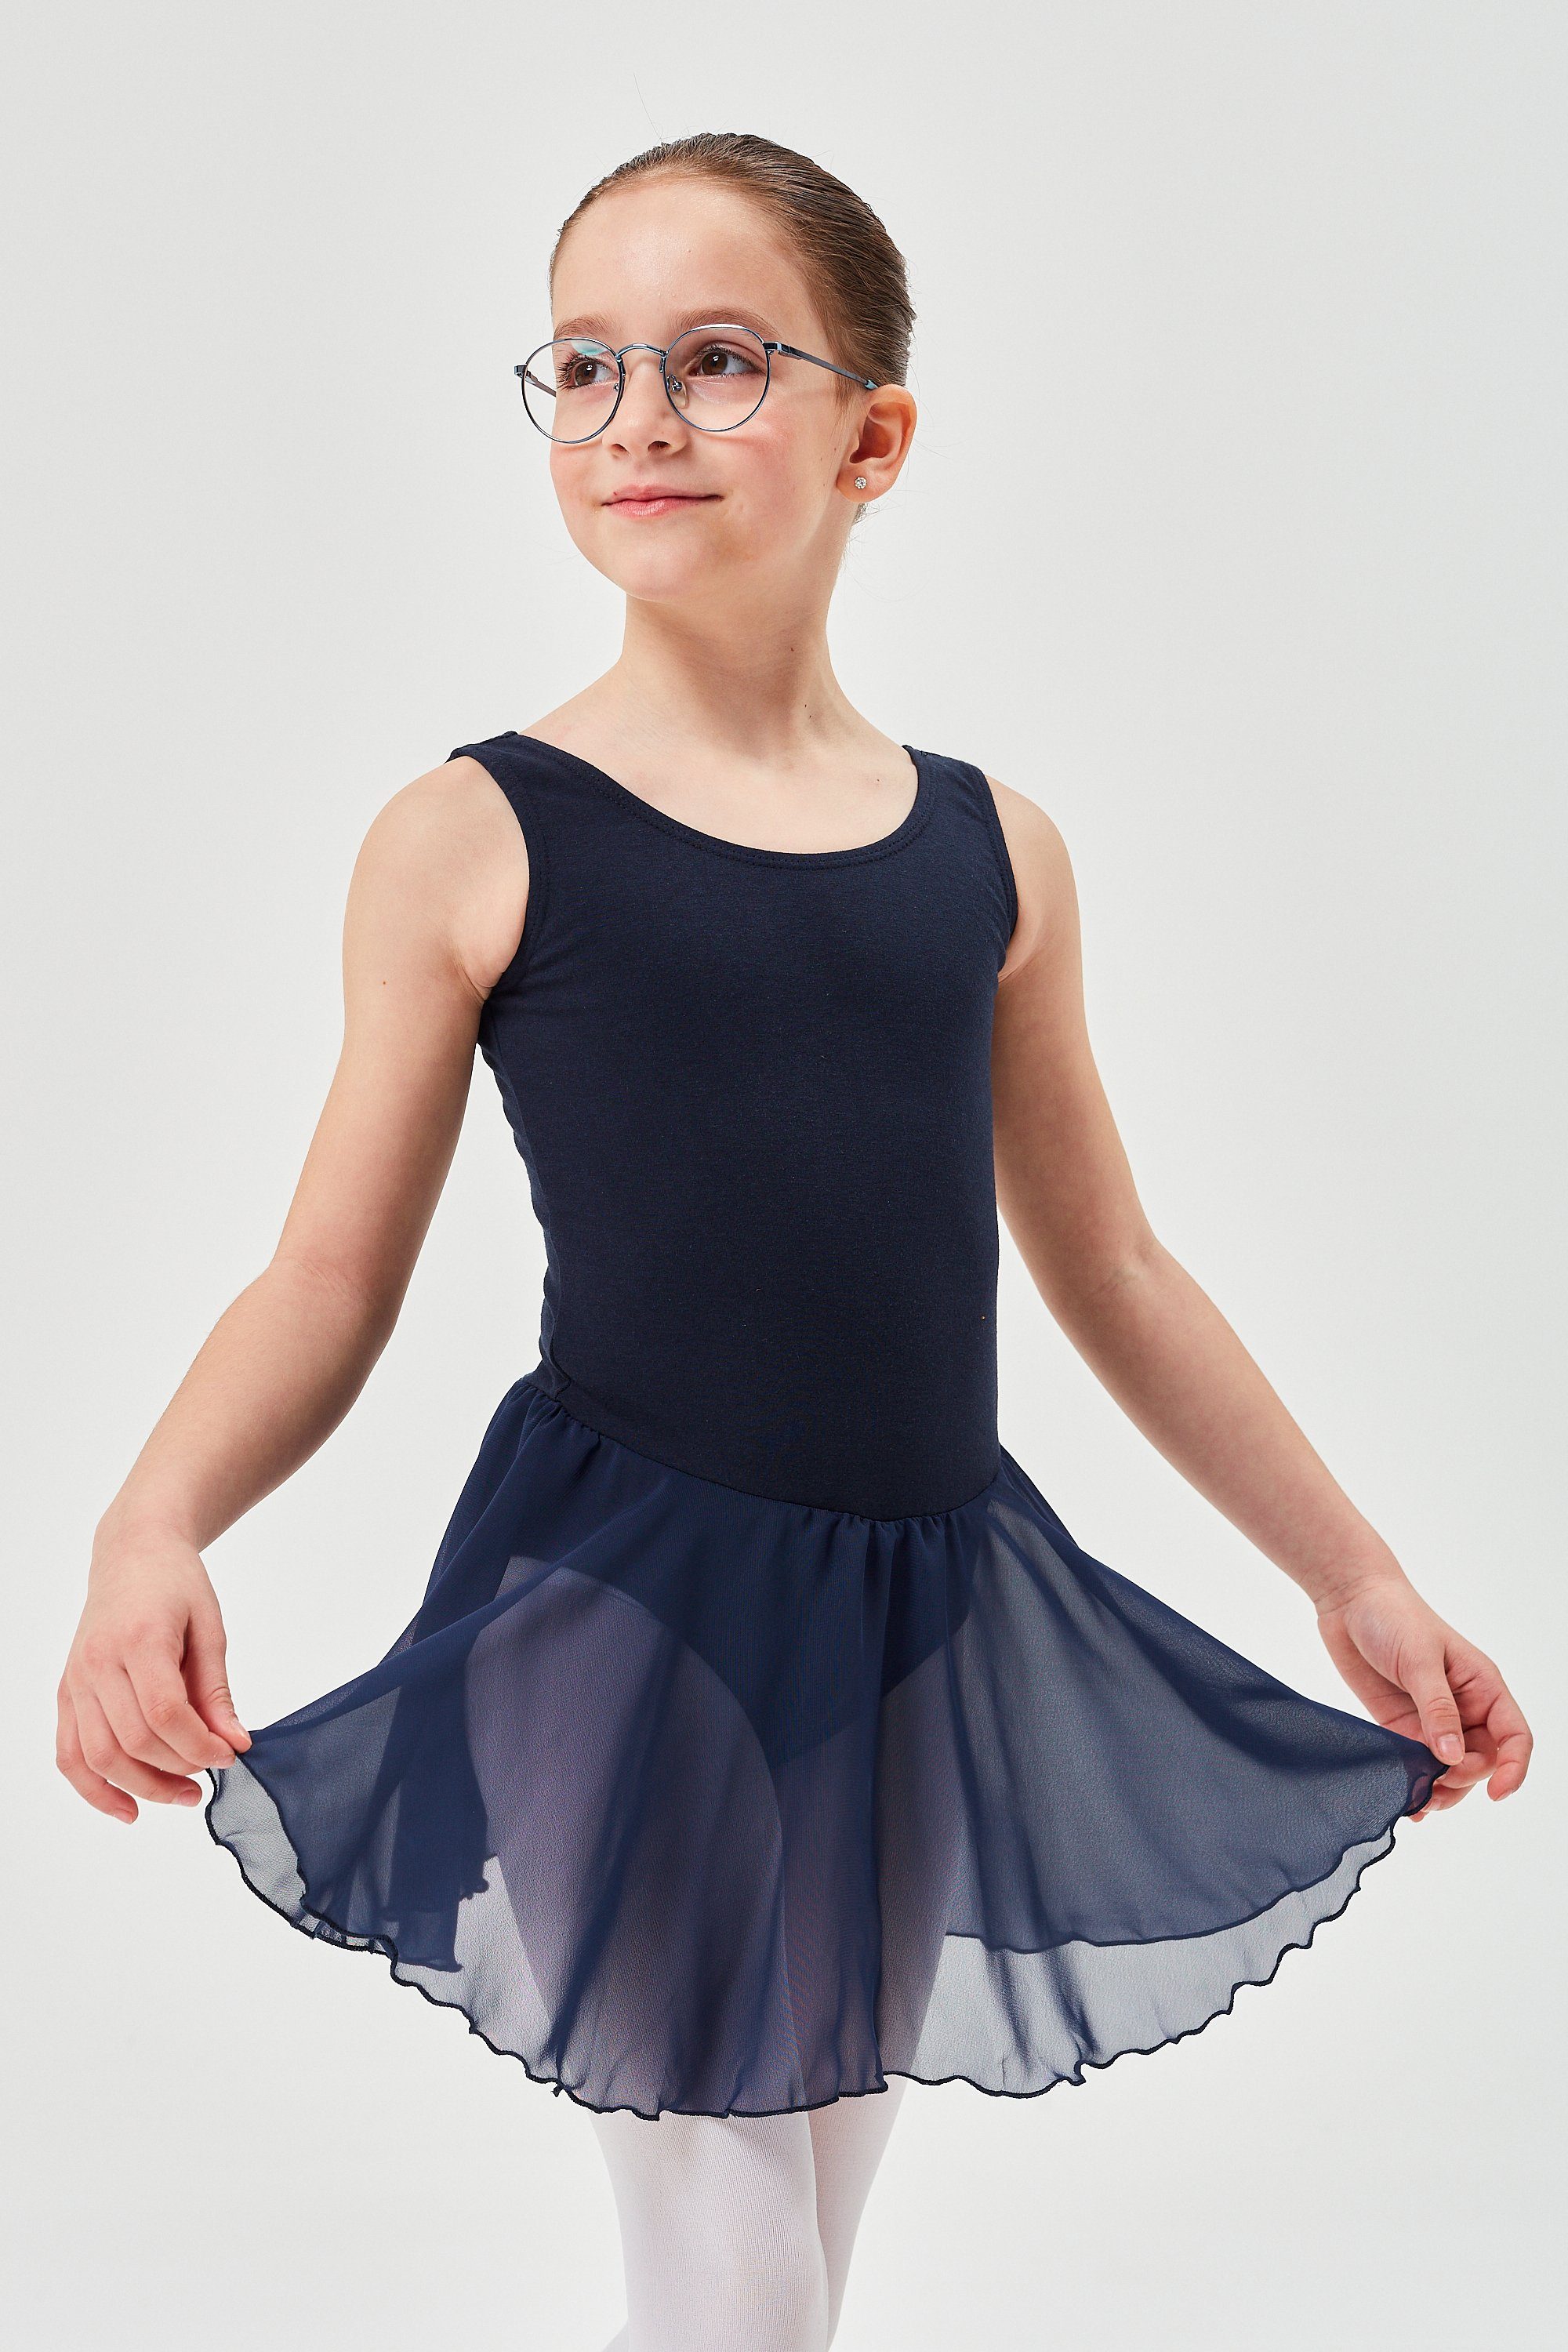 tanzmuster Chiffonkleid Ballett Trikot Minnie Röckchen wunderbar für mit aus Baumwollmaterial marineblau weichem Chiffon Ballettkleid Mädchen